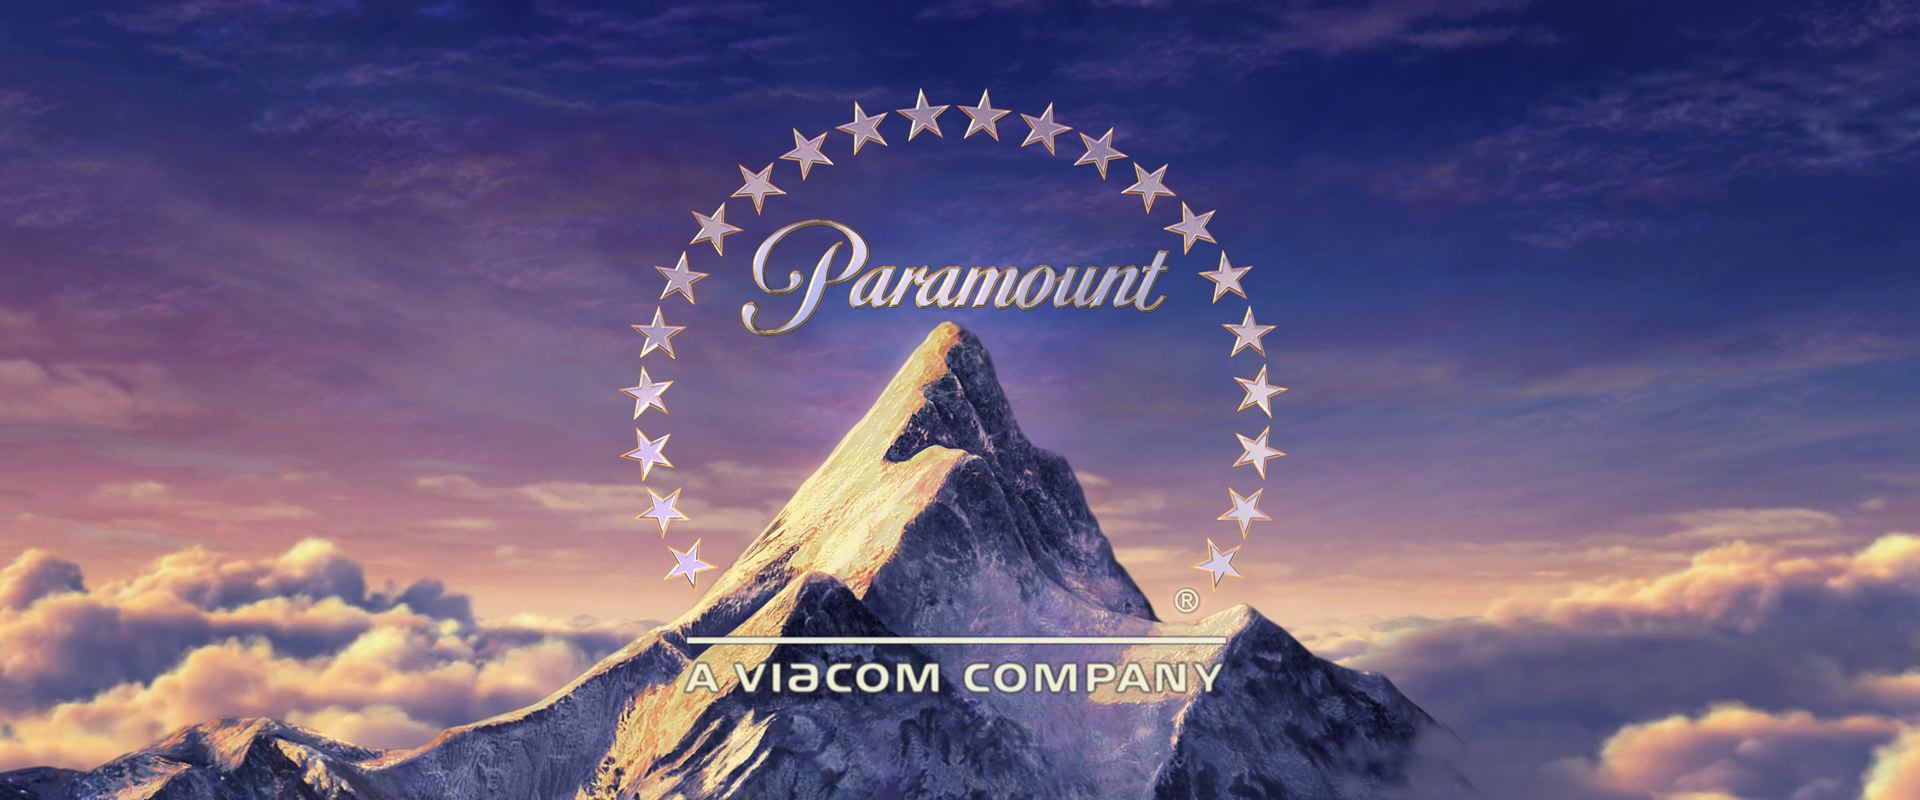 Logo Paramount La Historia Y El Significado Del Logot vrogue.co